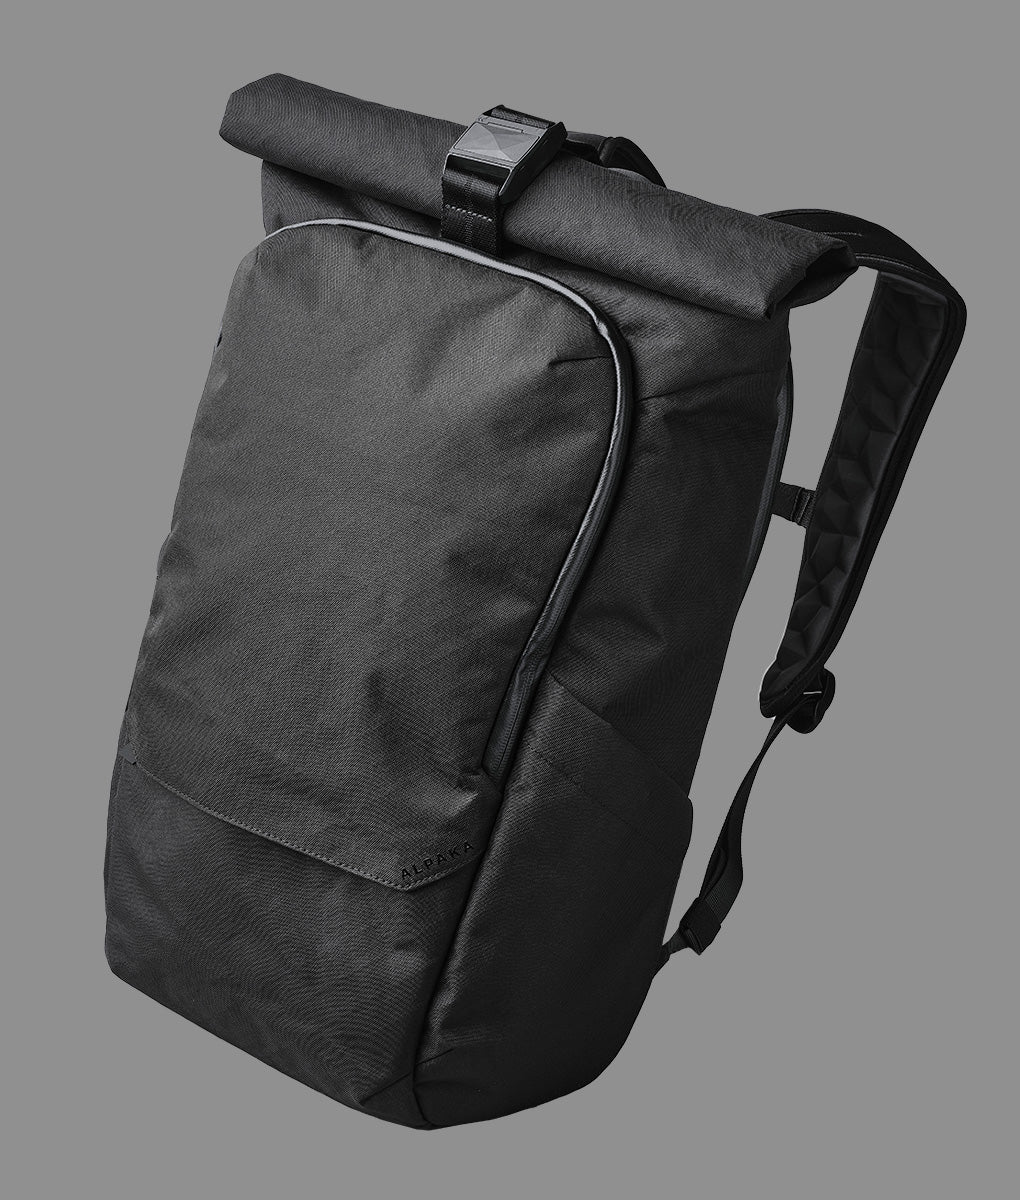 Alpaka Shift Pack V2 laptop backpacks for travel – Mined